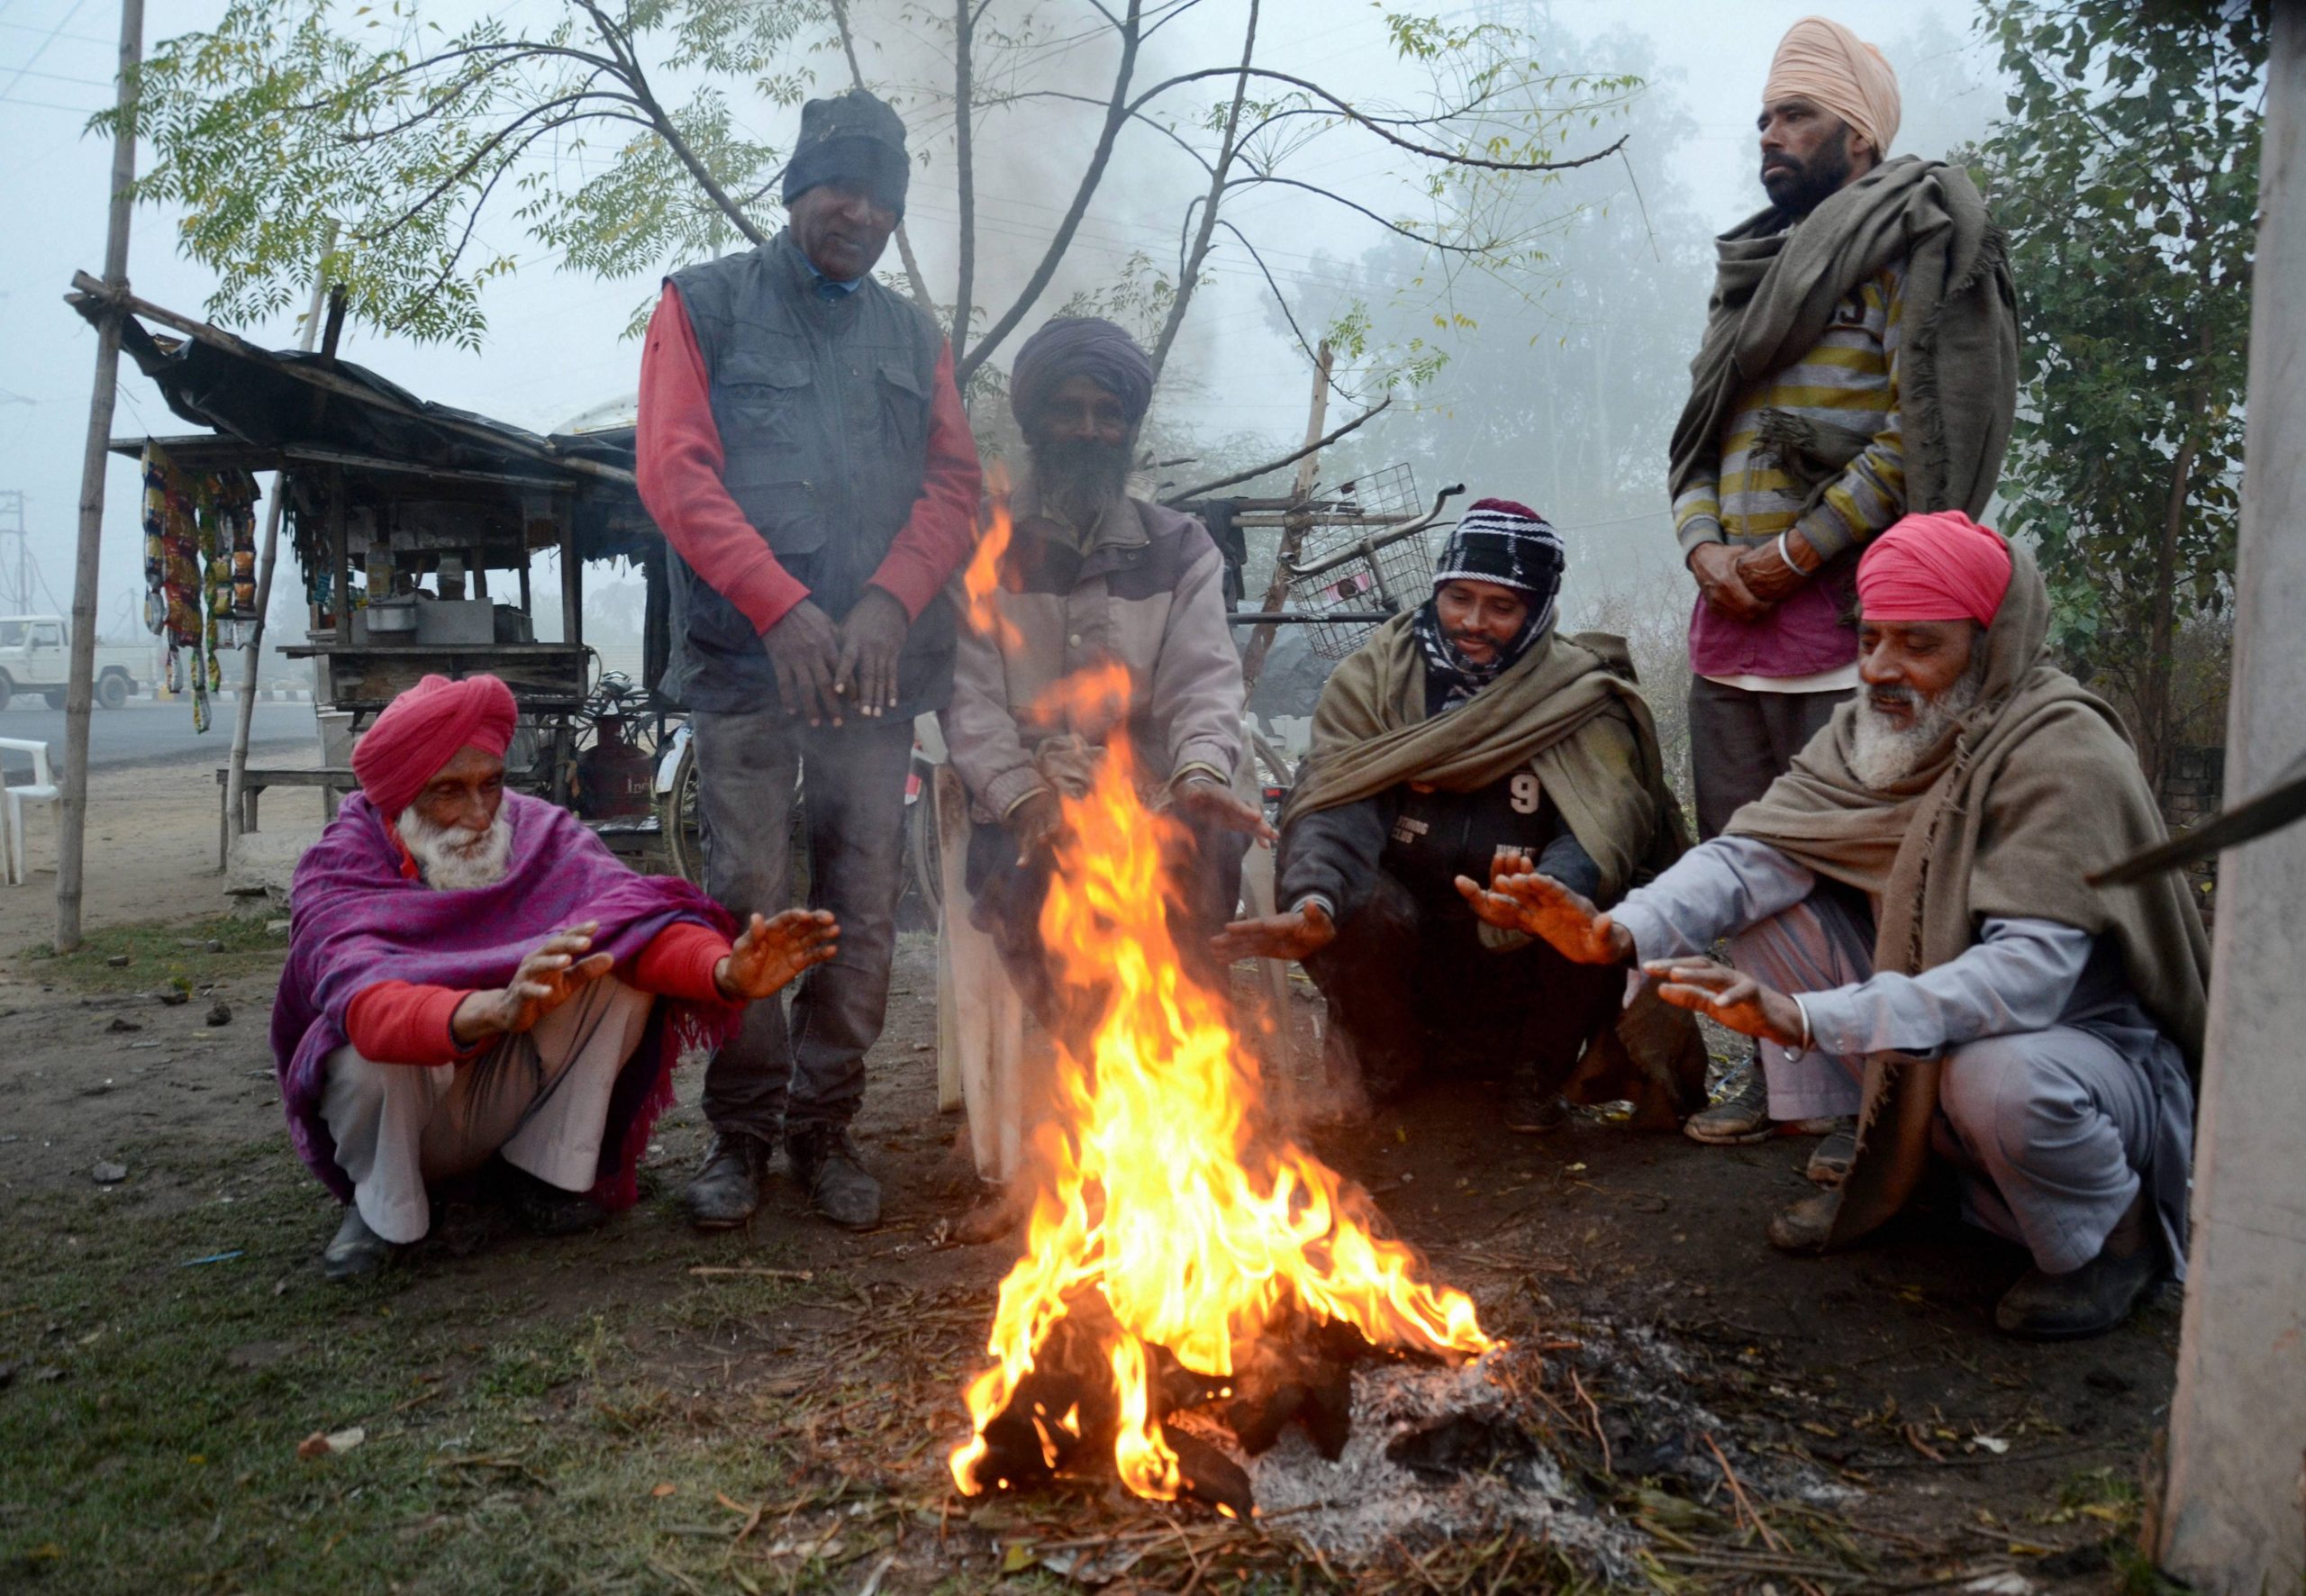 देश में सर्दी का सितम, राजस्थान के माउंट आबू में तापमान 1.4 डिग्री सेल्सियस दर्ज किया गया